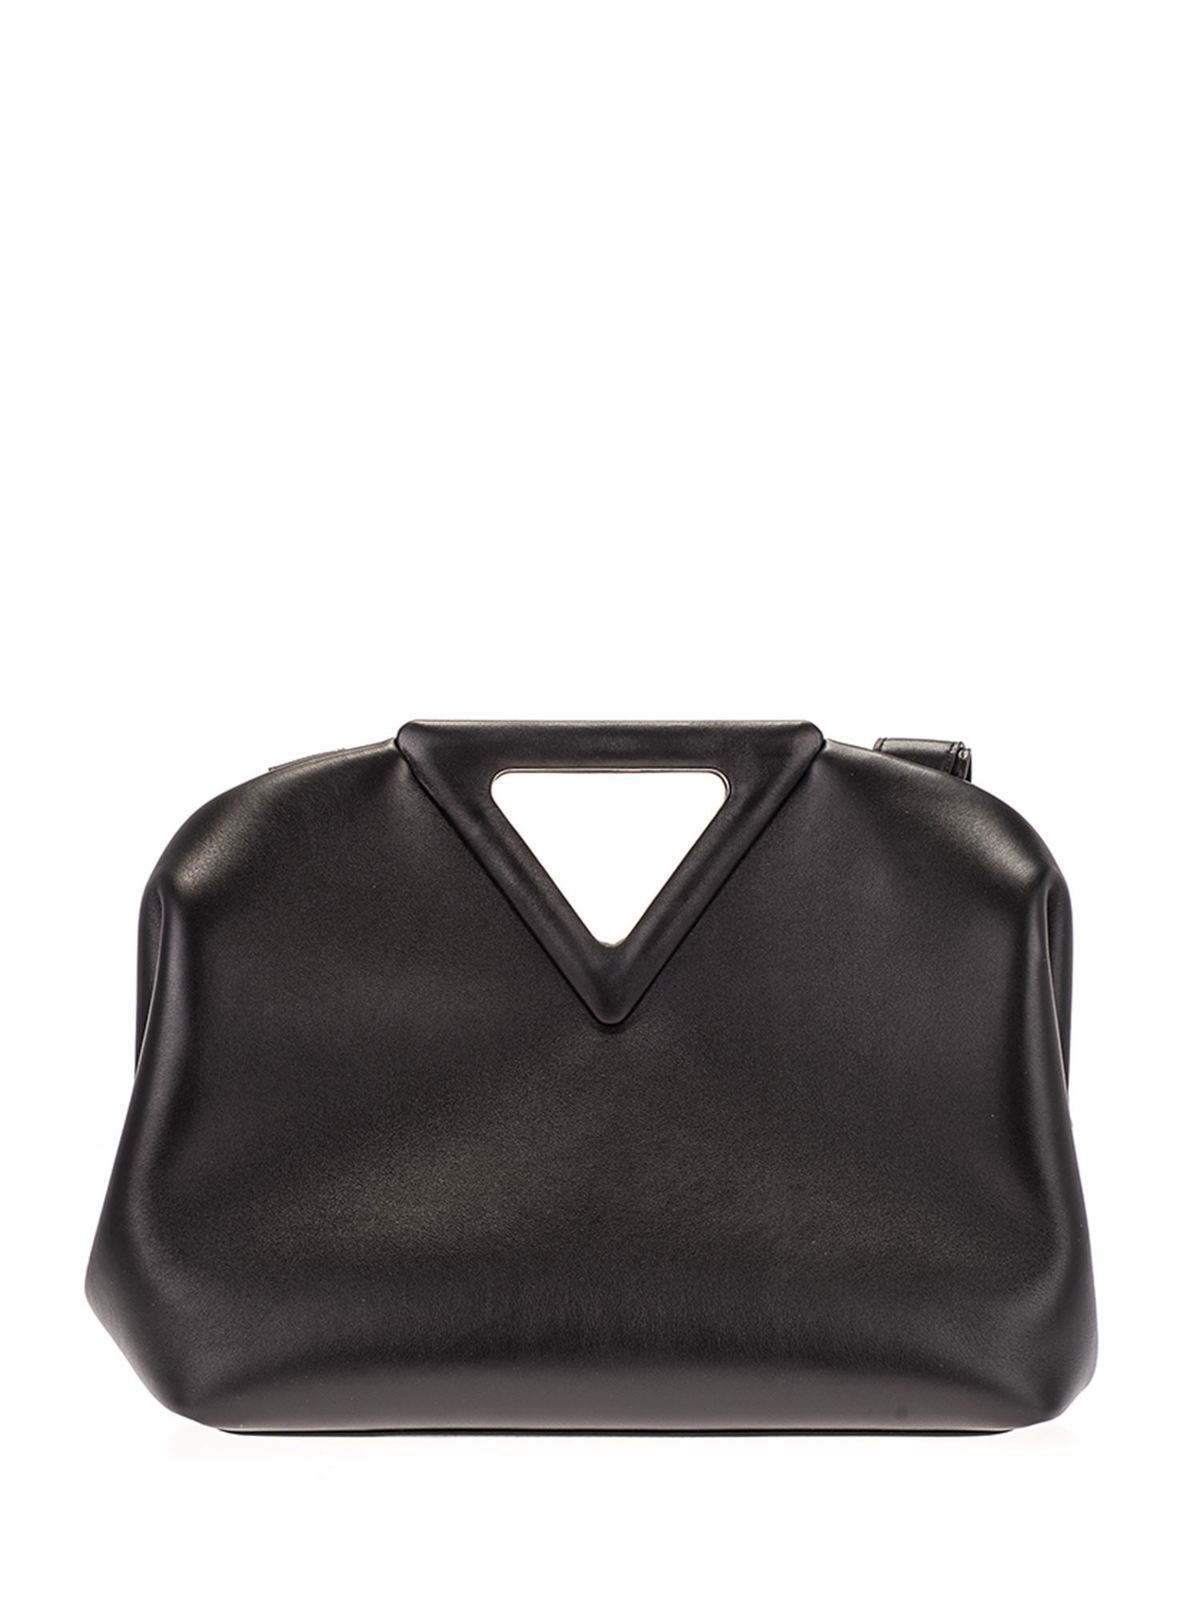 Totes bags Bottega Veneta - The Triangle bag in black - 652446VCP401229